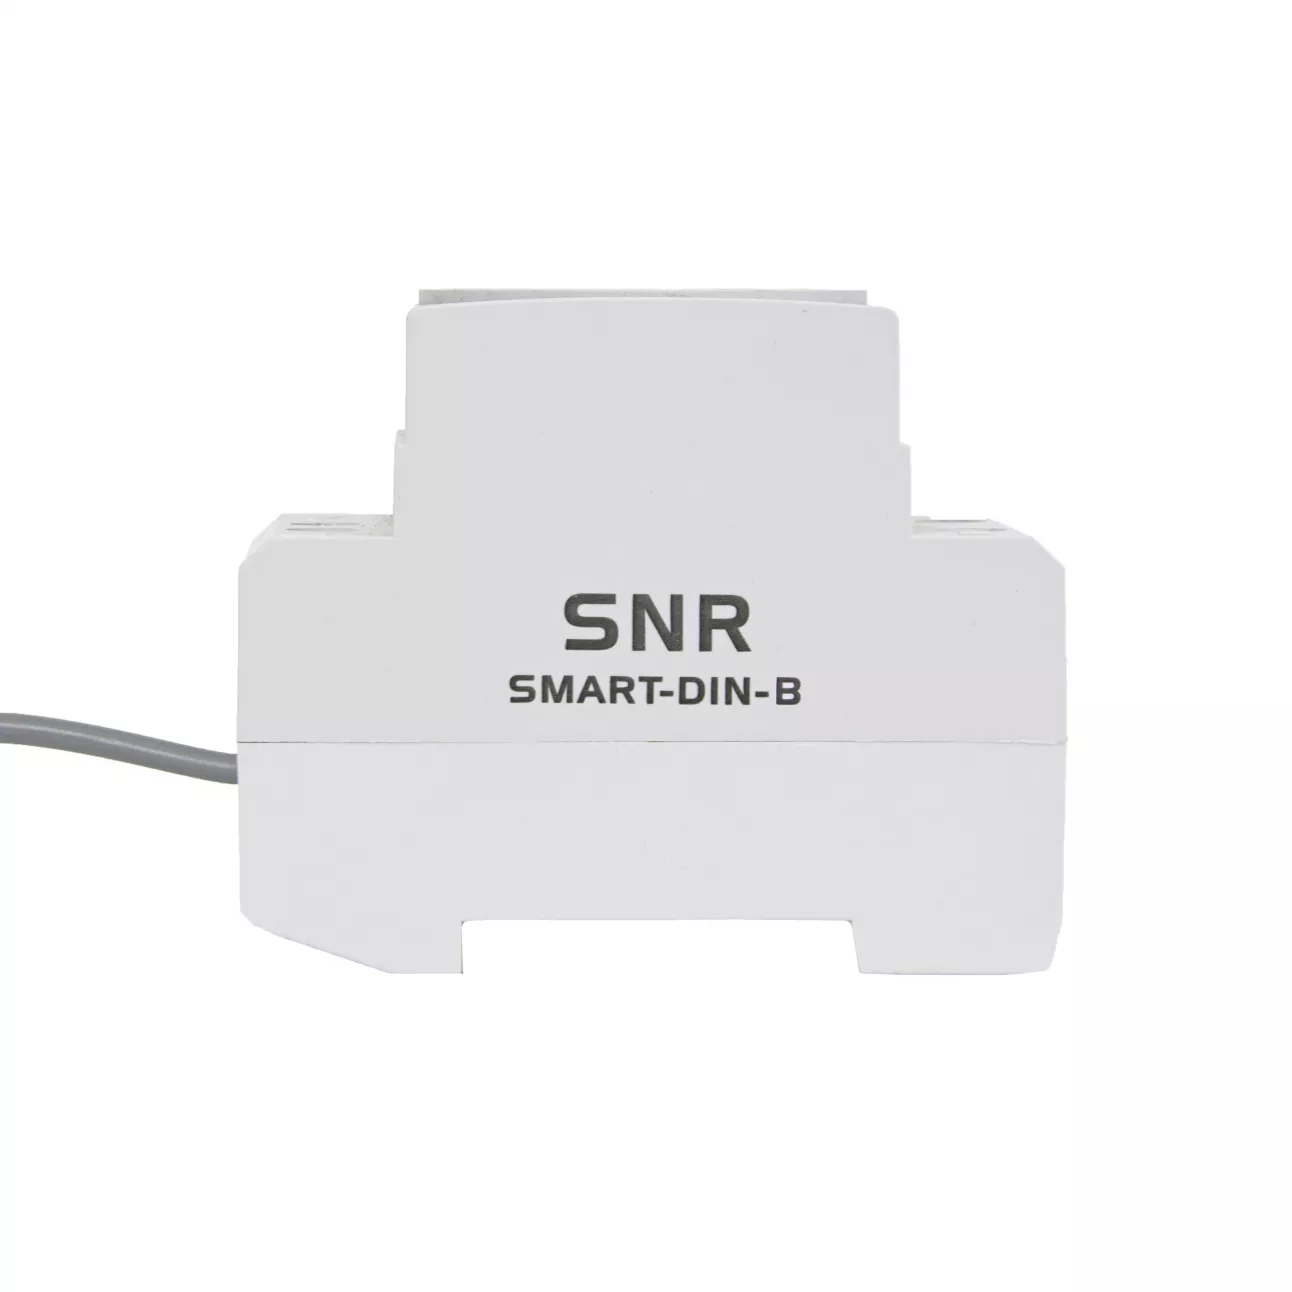 Розетка управляемая SNR-SMART-DIN-B, (NC) контакт